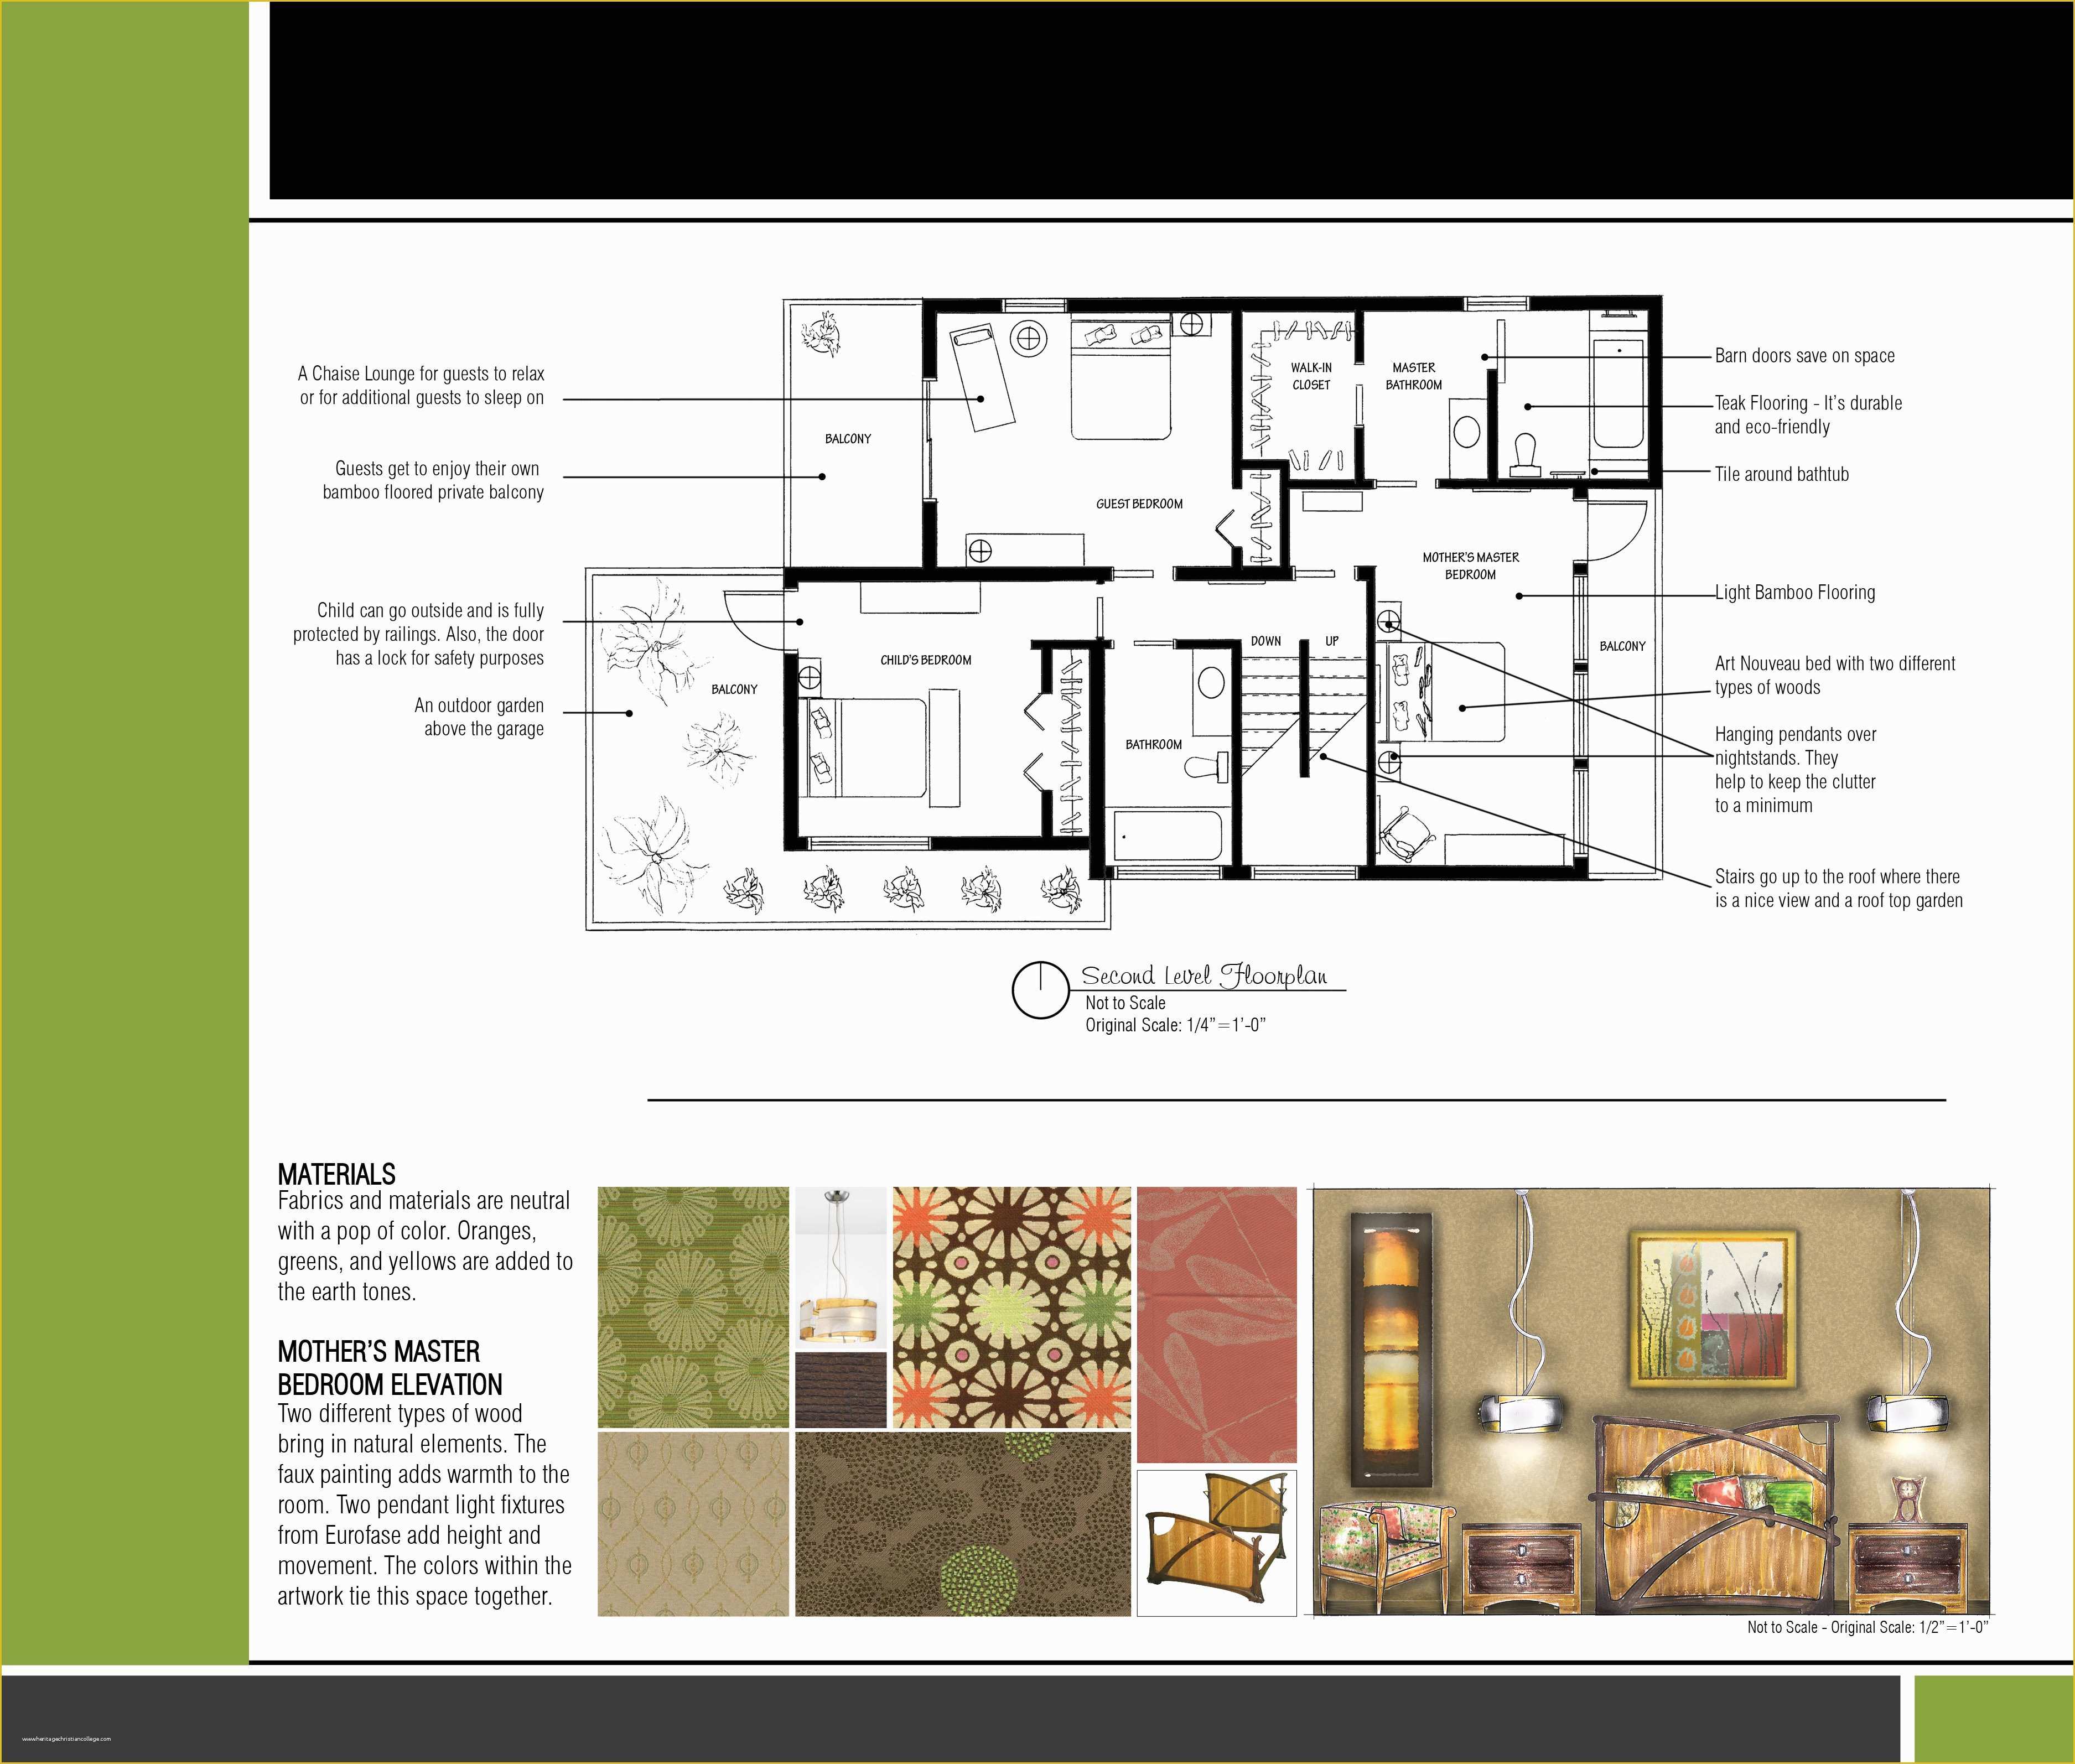 Interior Design Portfolio Templates Free Download Of Interior Design Portfolio Pinterest Templates Student